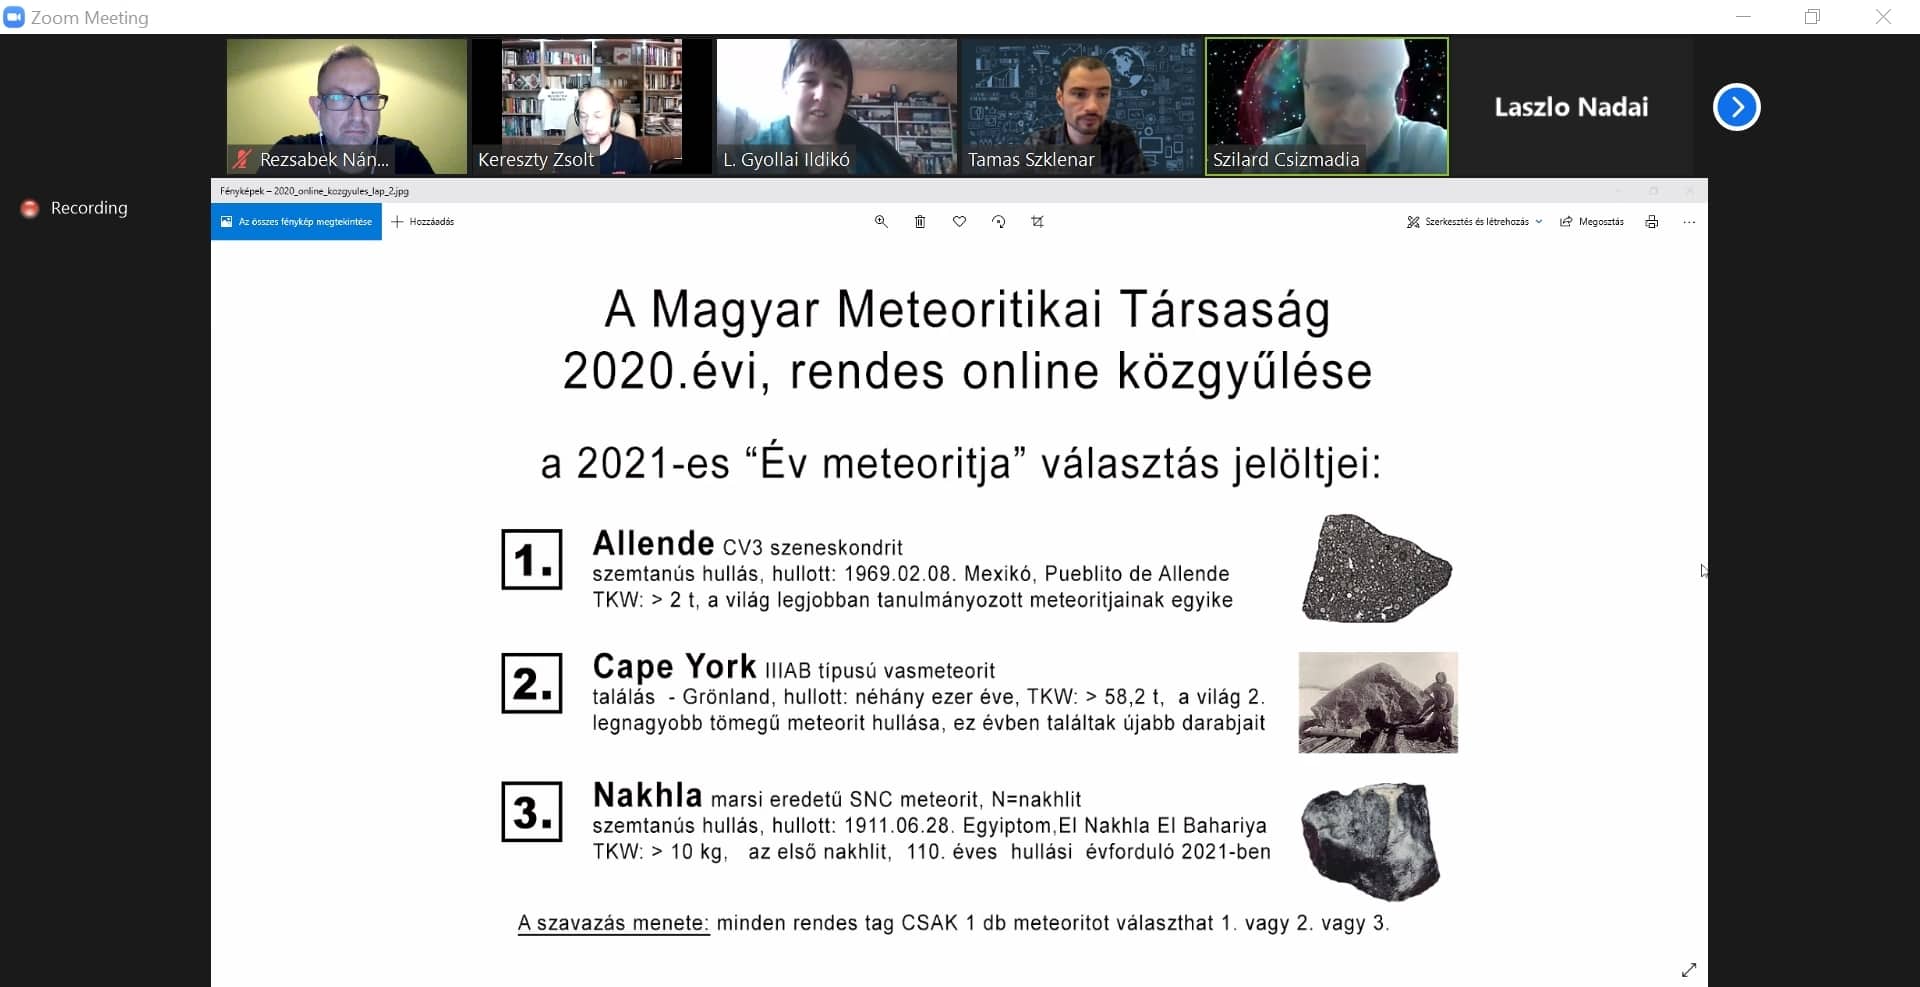 A Magyar Meteoritikai Társaság online közgyűlése